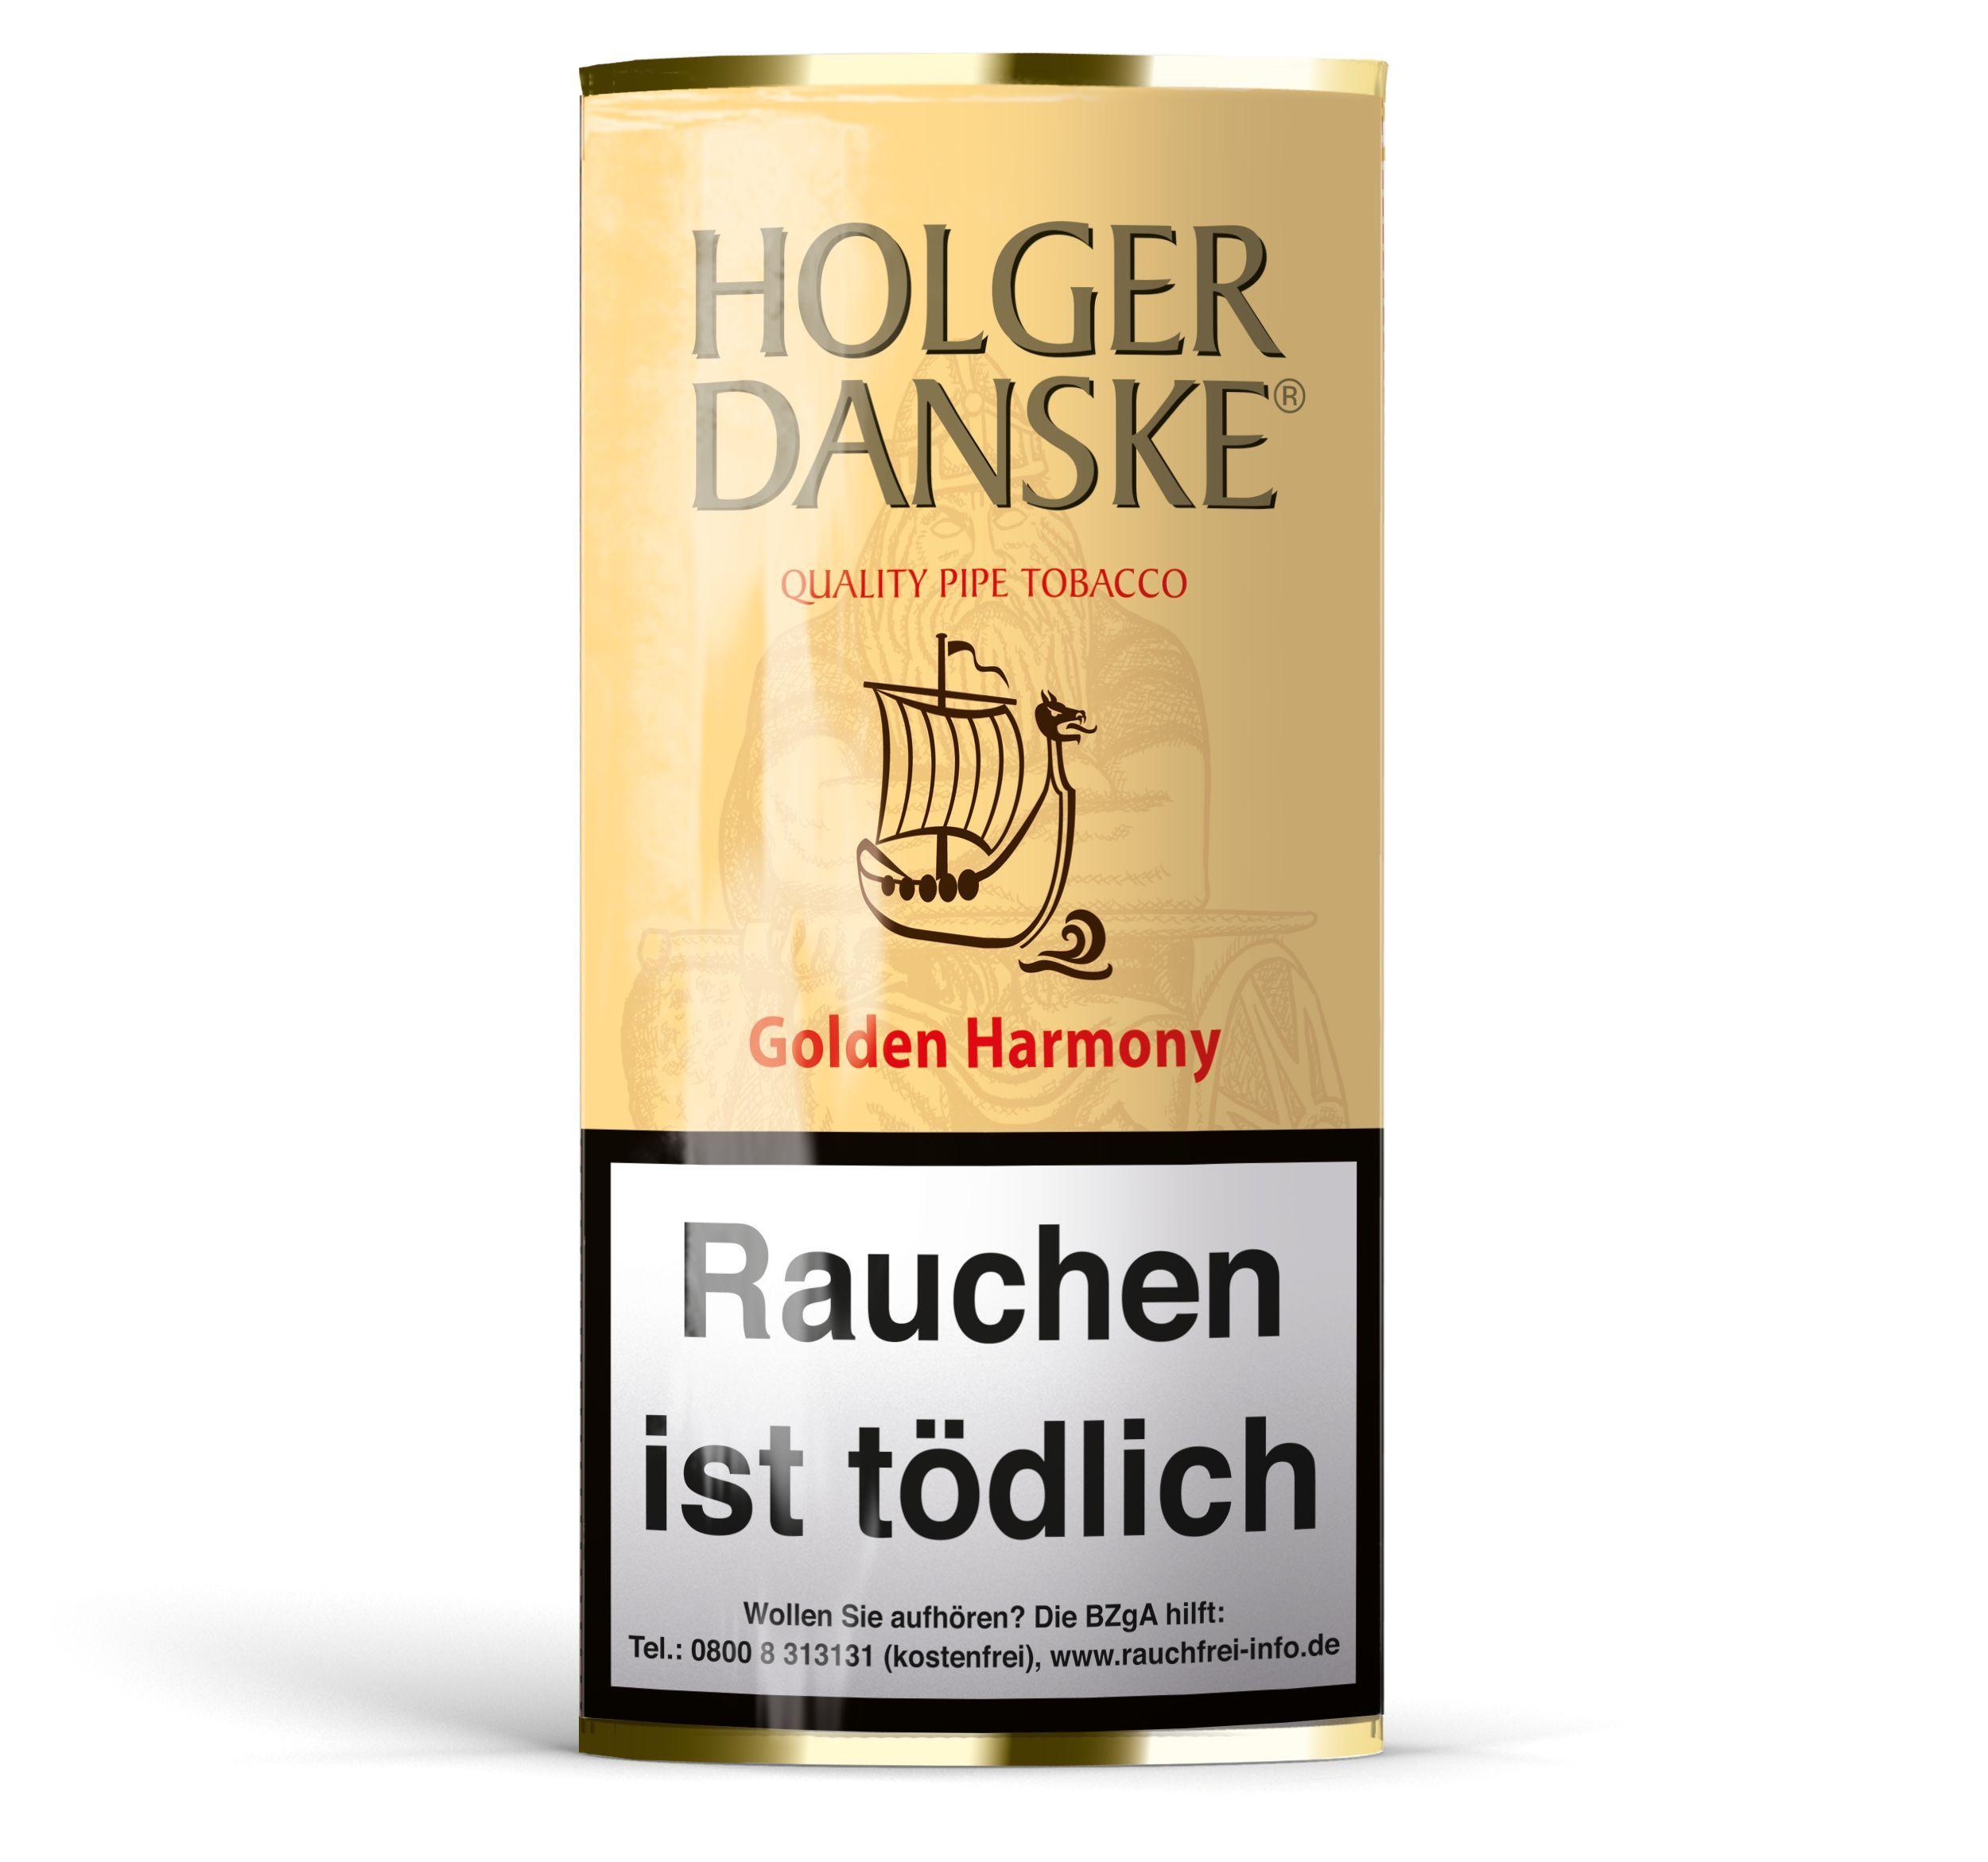 Holger Danske Pfeifentabak Golden Harmony 1 Packung